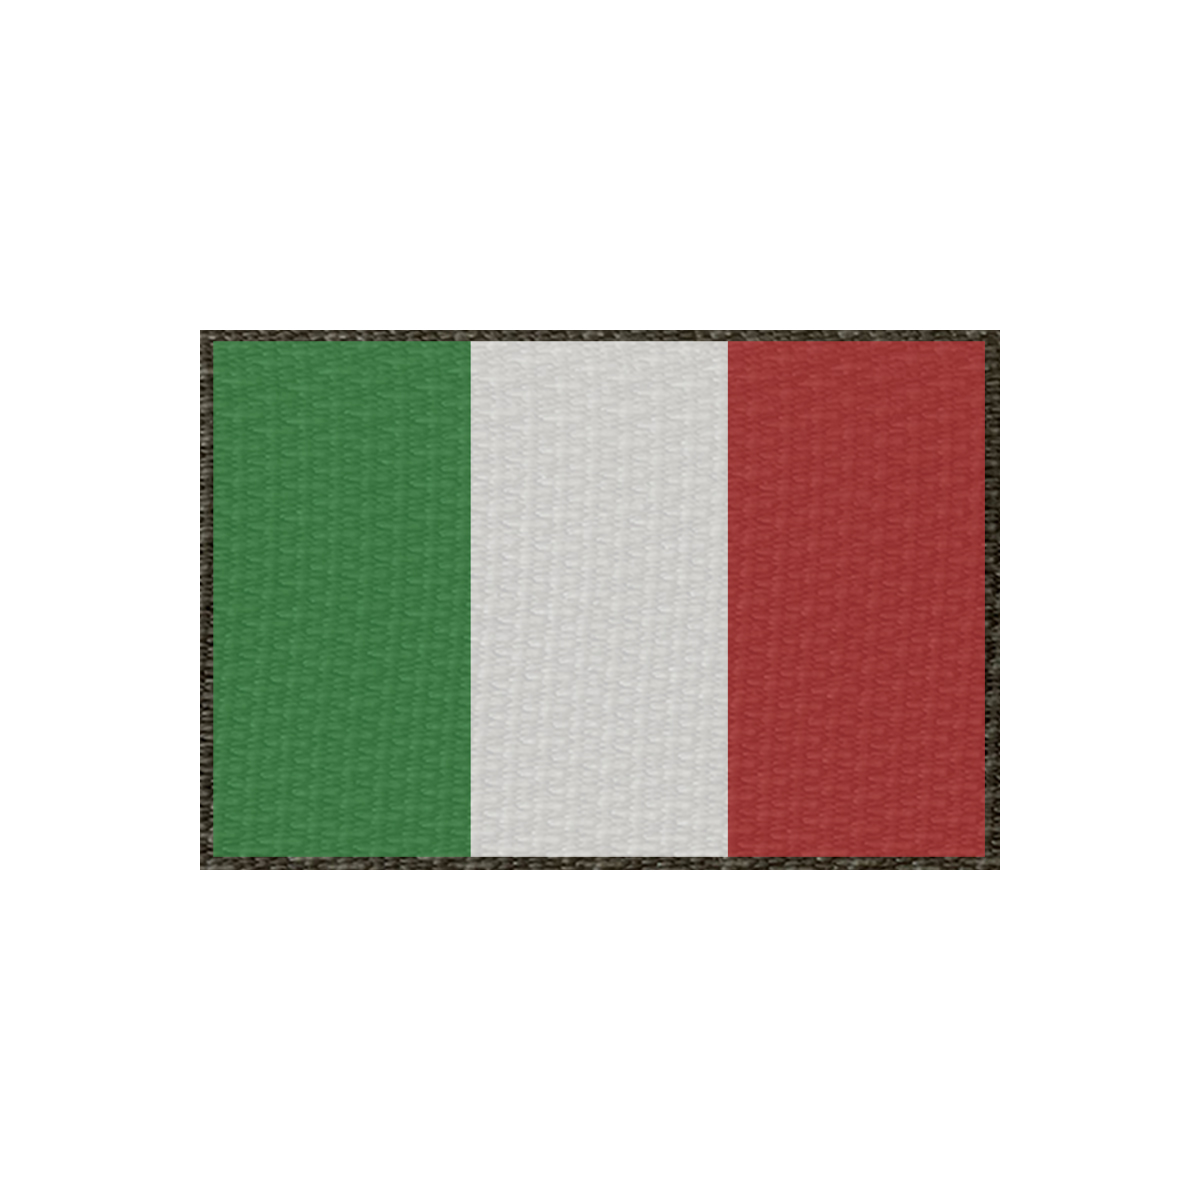 Patch Flagge Italien 75x50mm, Klett